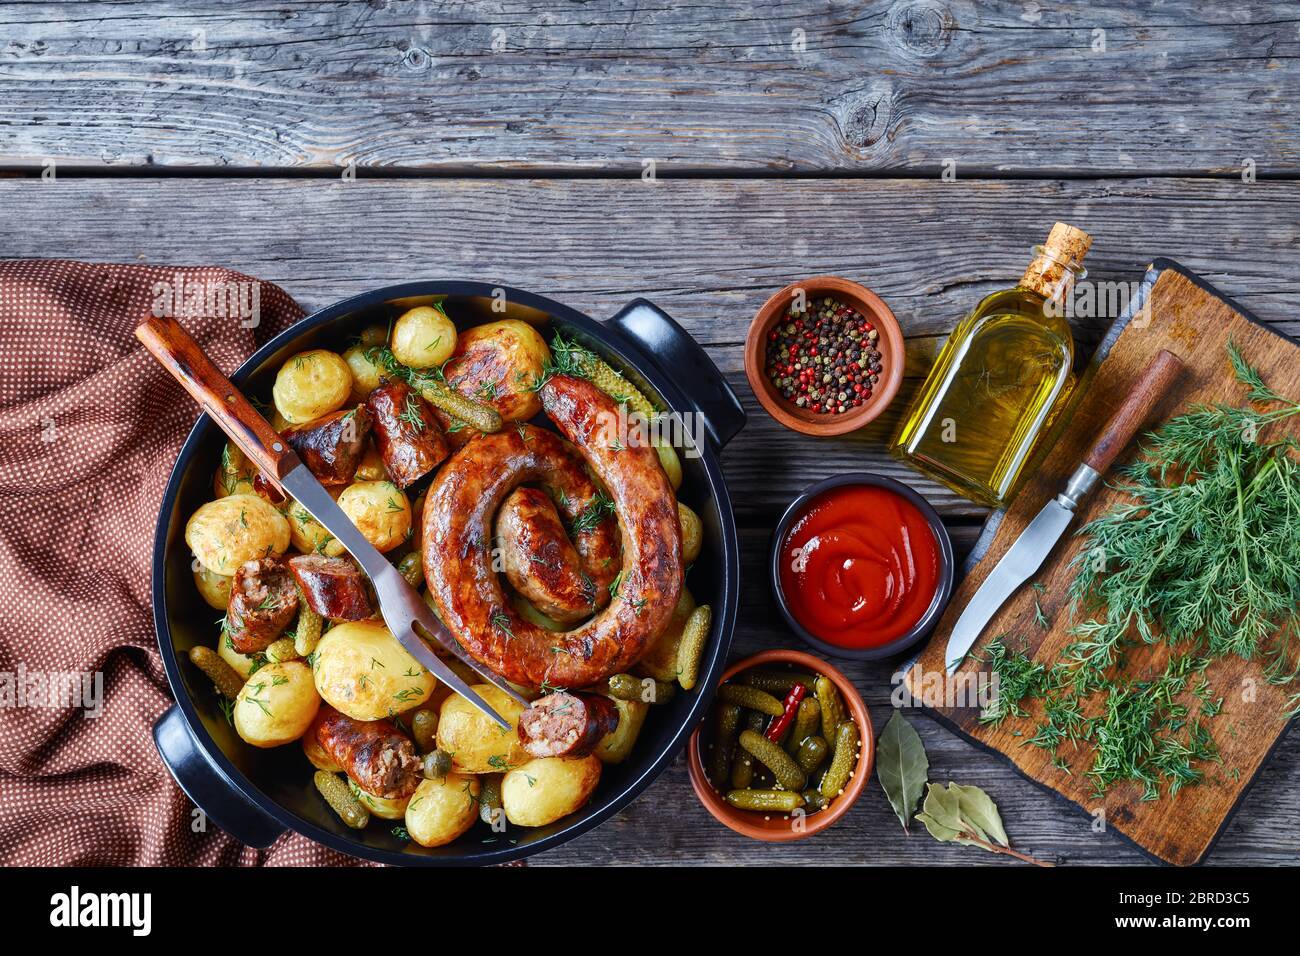 Hausgemachte britische Mahlzeit: Gebratene Schweinewurst und junge Kartoffel mit Gurken, bestreut mit frischem Dill auf einem schwarzen Gericht auf einem hölzernen Hintergrund mit Ketc Stockfoto